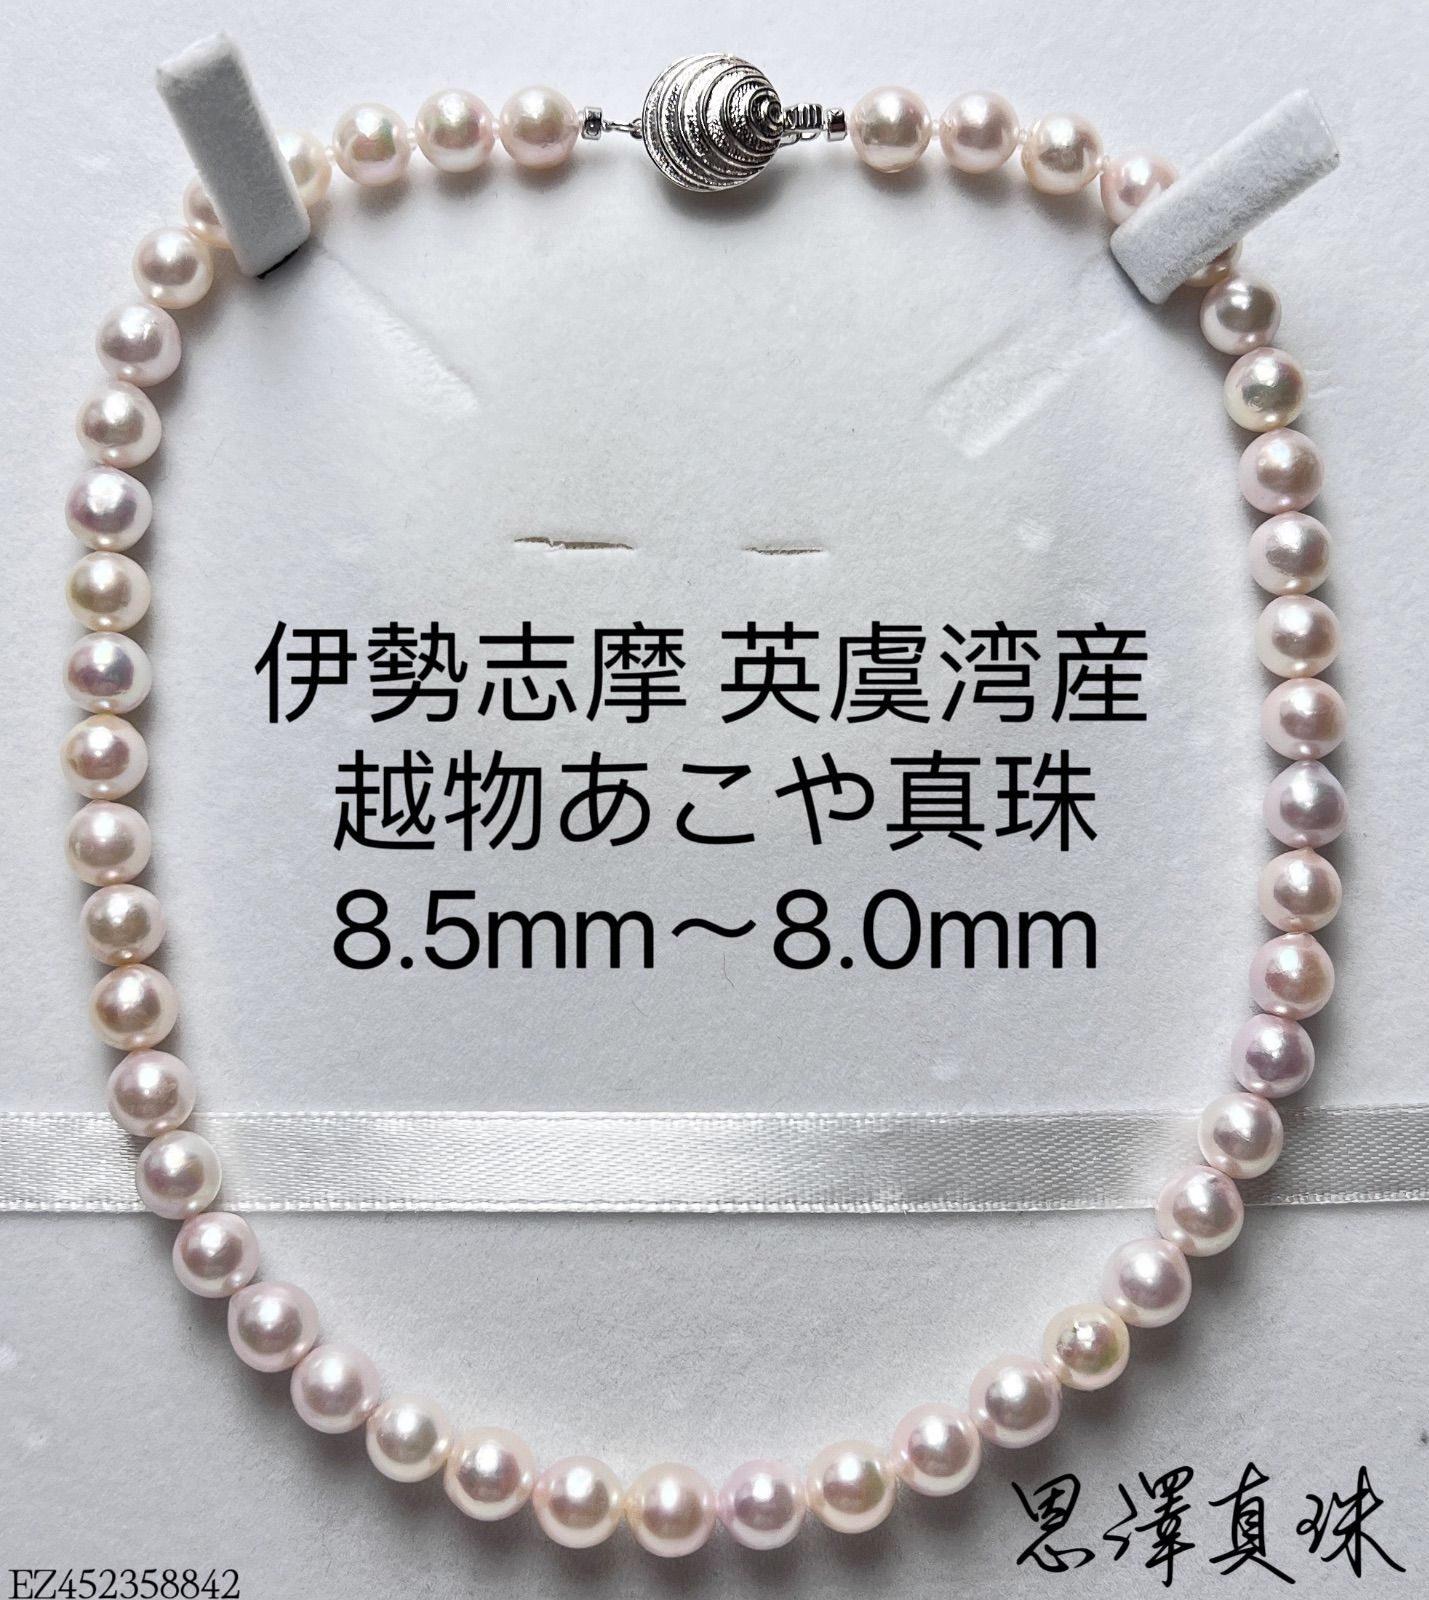 伊勢志摩 英虞湾産 越物あこや真珠 8.3mm 超希少色ホワイト虹ピンクK18 